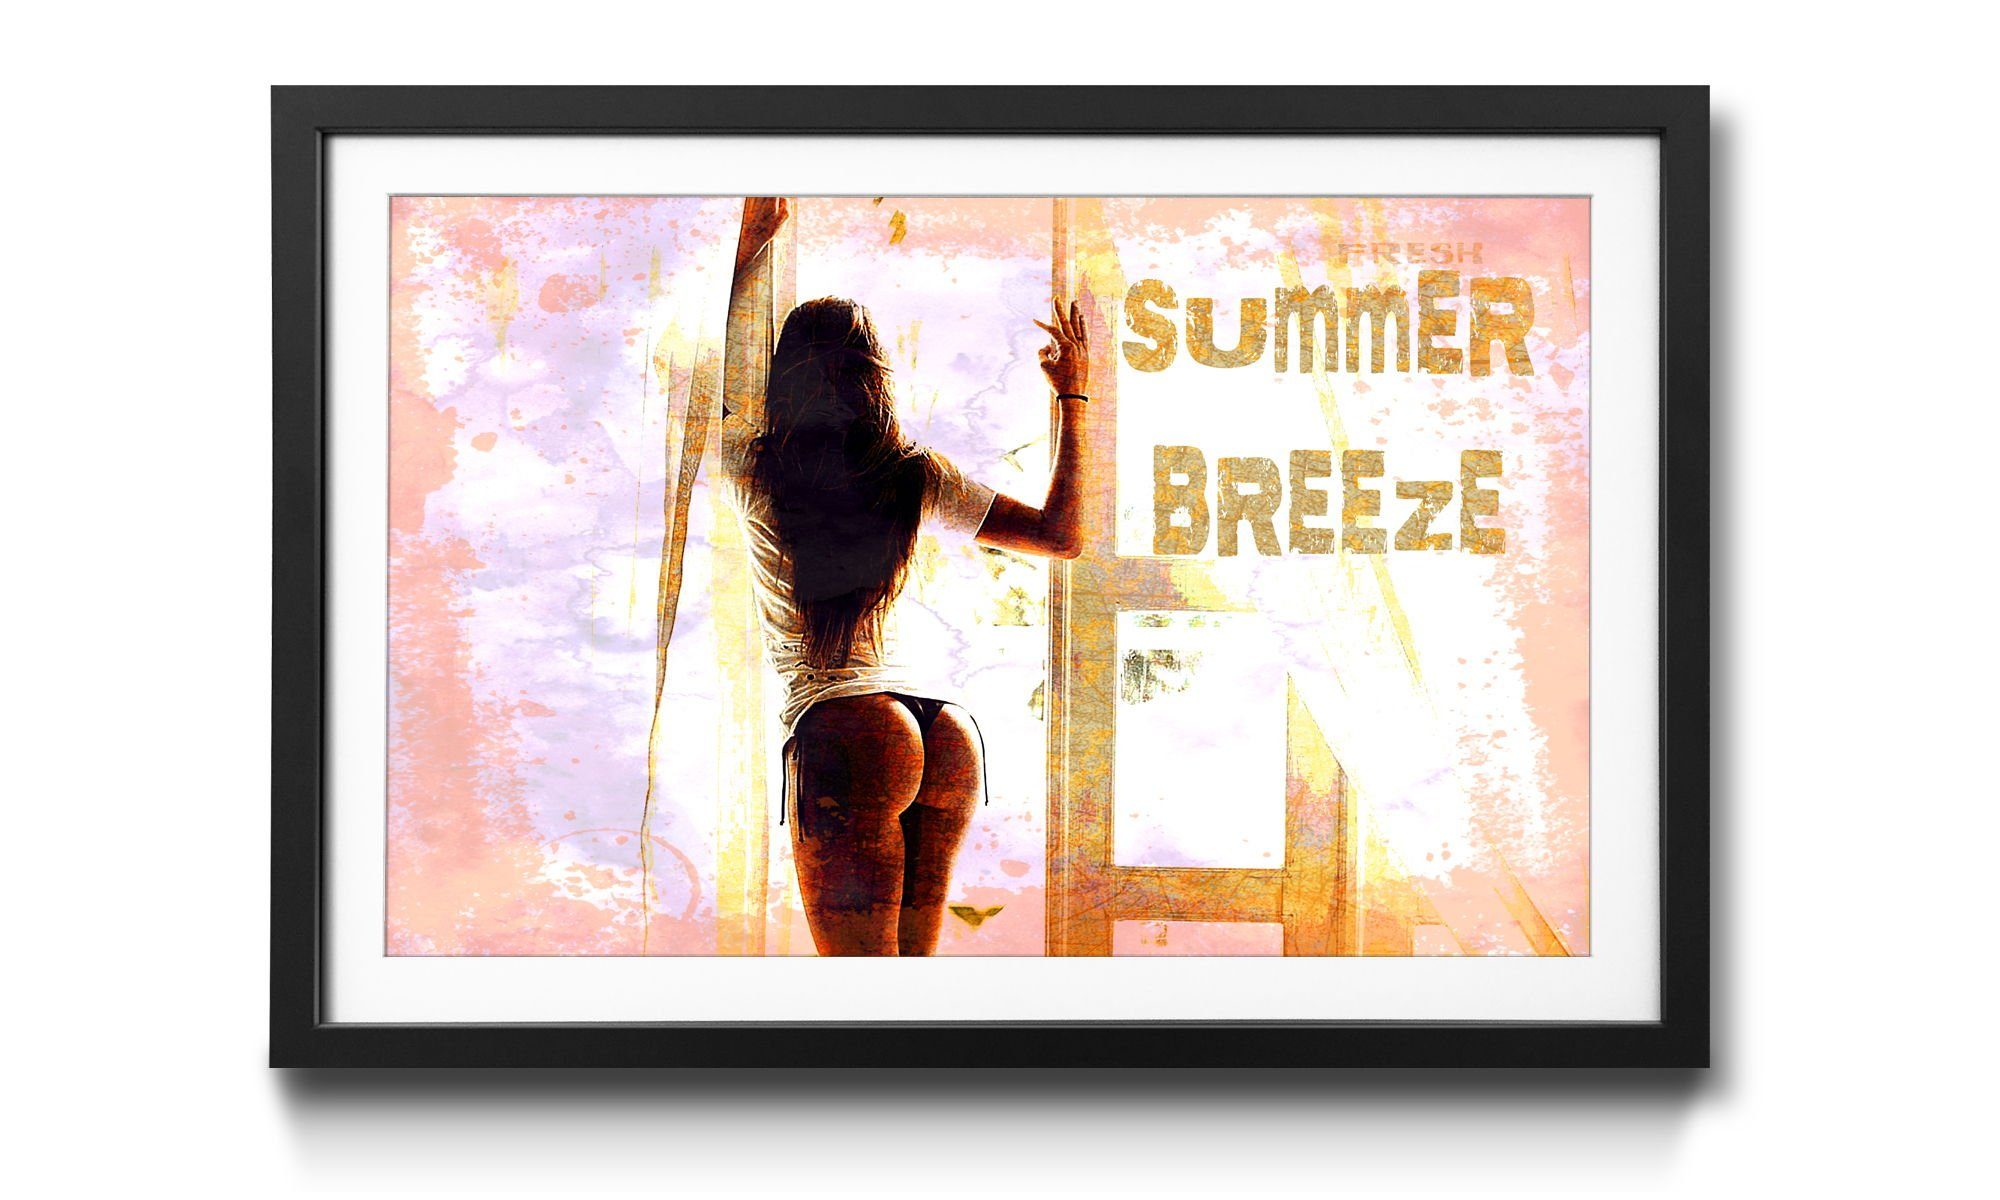 mit Bild 4 erhältlich WandbilderXXL Größen Rahmen Breeze, Summer Erotik, Wandbild, in